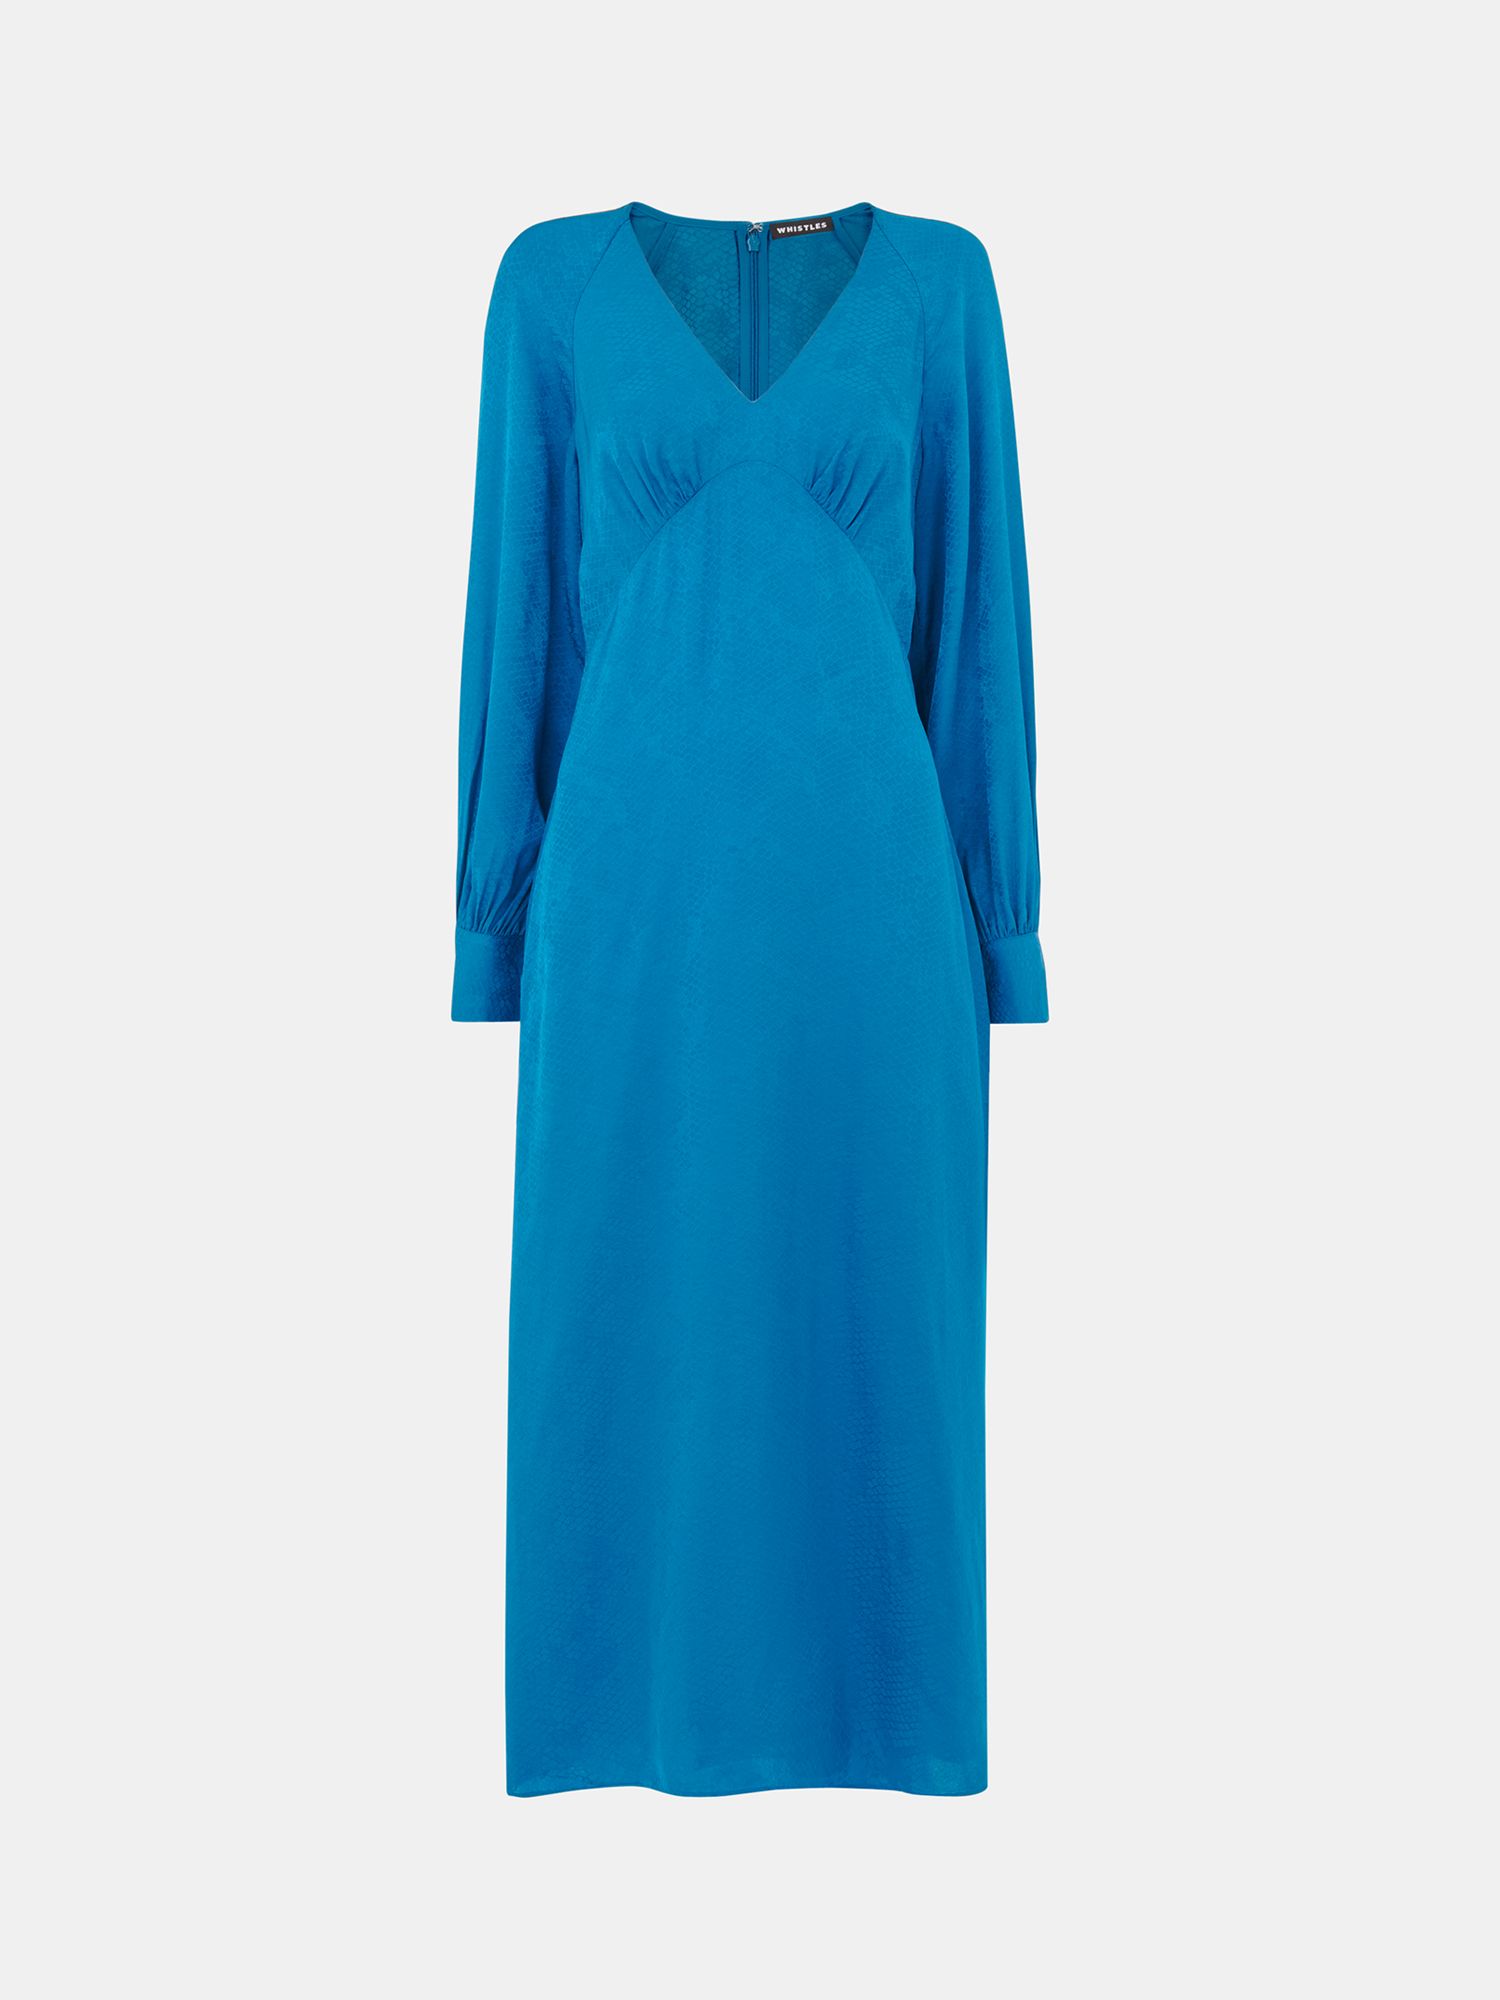 Whistles Petite Serpent Jacquard Midi Dress, Blue, 12